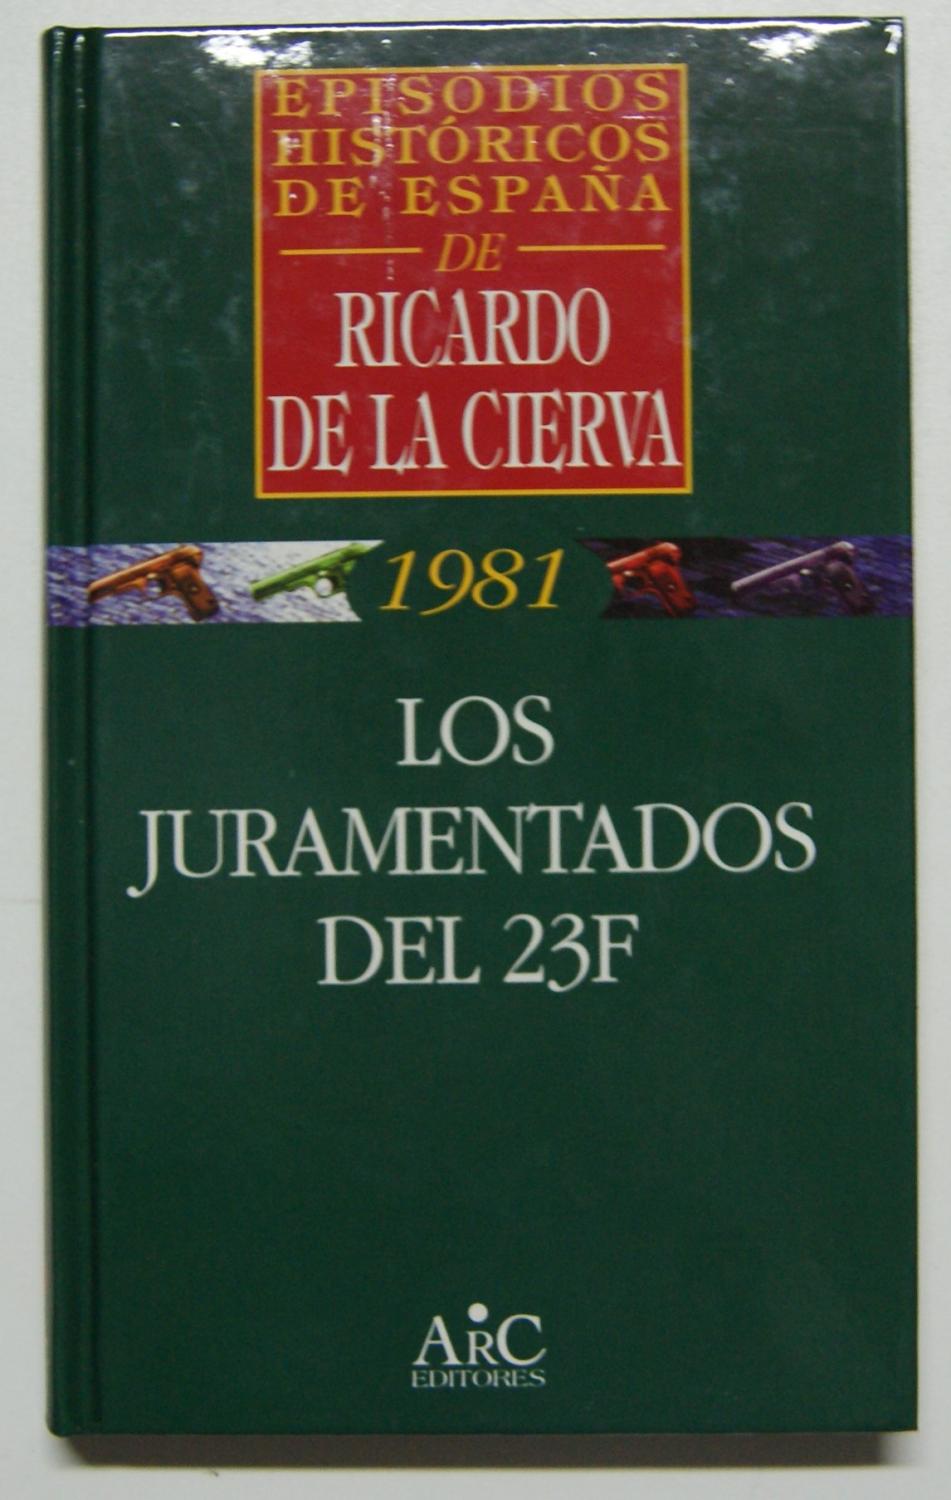 Los juramentados del 23 de febrero - Cierva, Ricardo de la